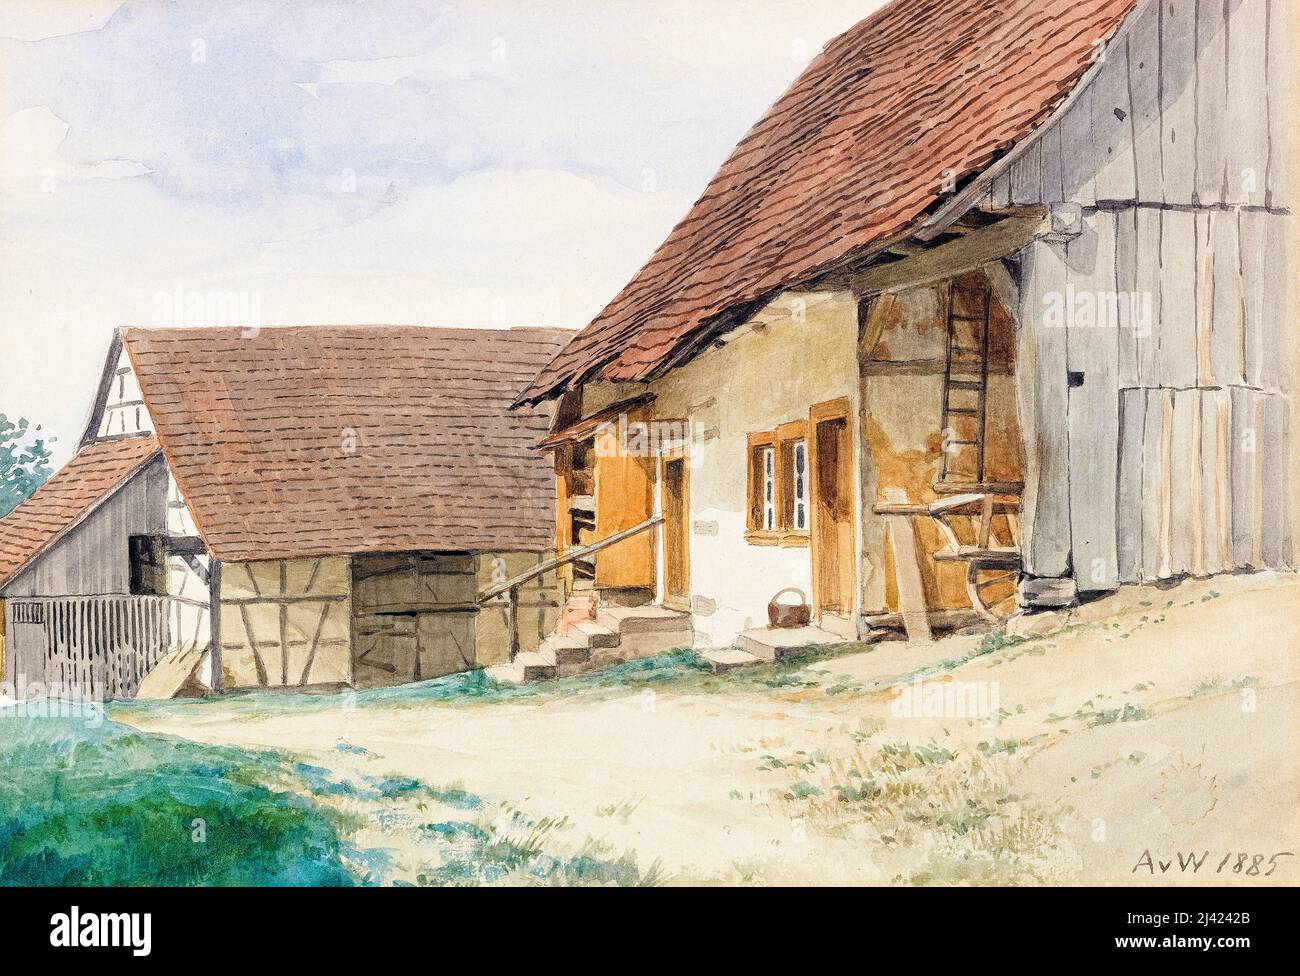 Anton von Werner, Bauerngehöft, (Farm Homestead), painting 1885 Stock Photo